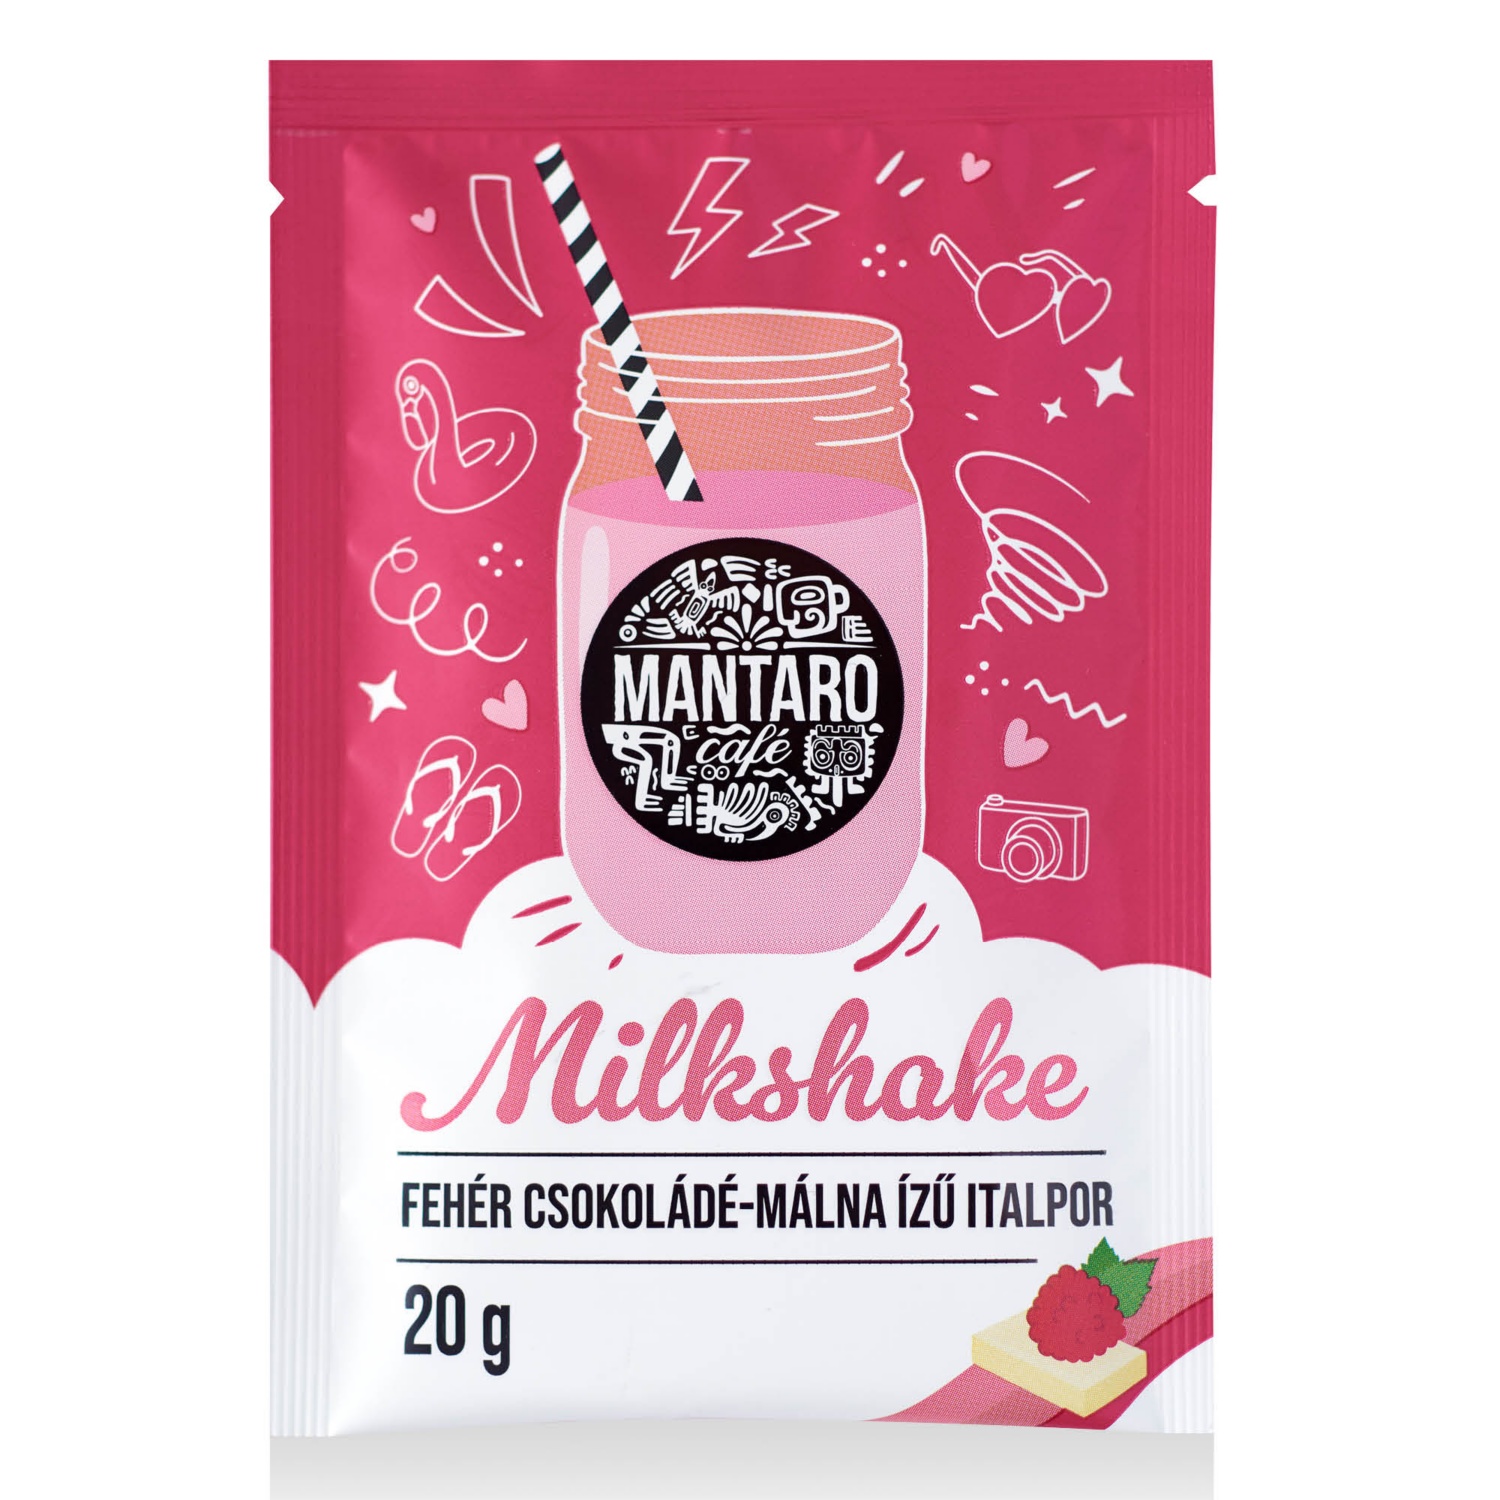 MANTARO CAFÉ Milkshake, 20 g, fehér csokoládé-málna ízű italpor